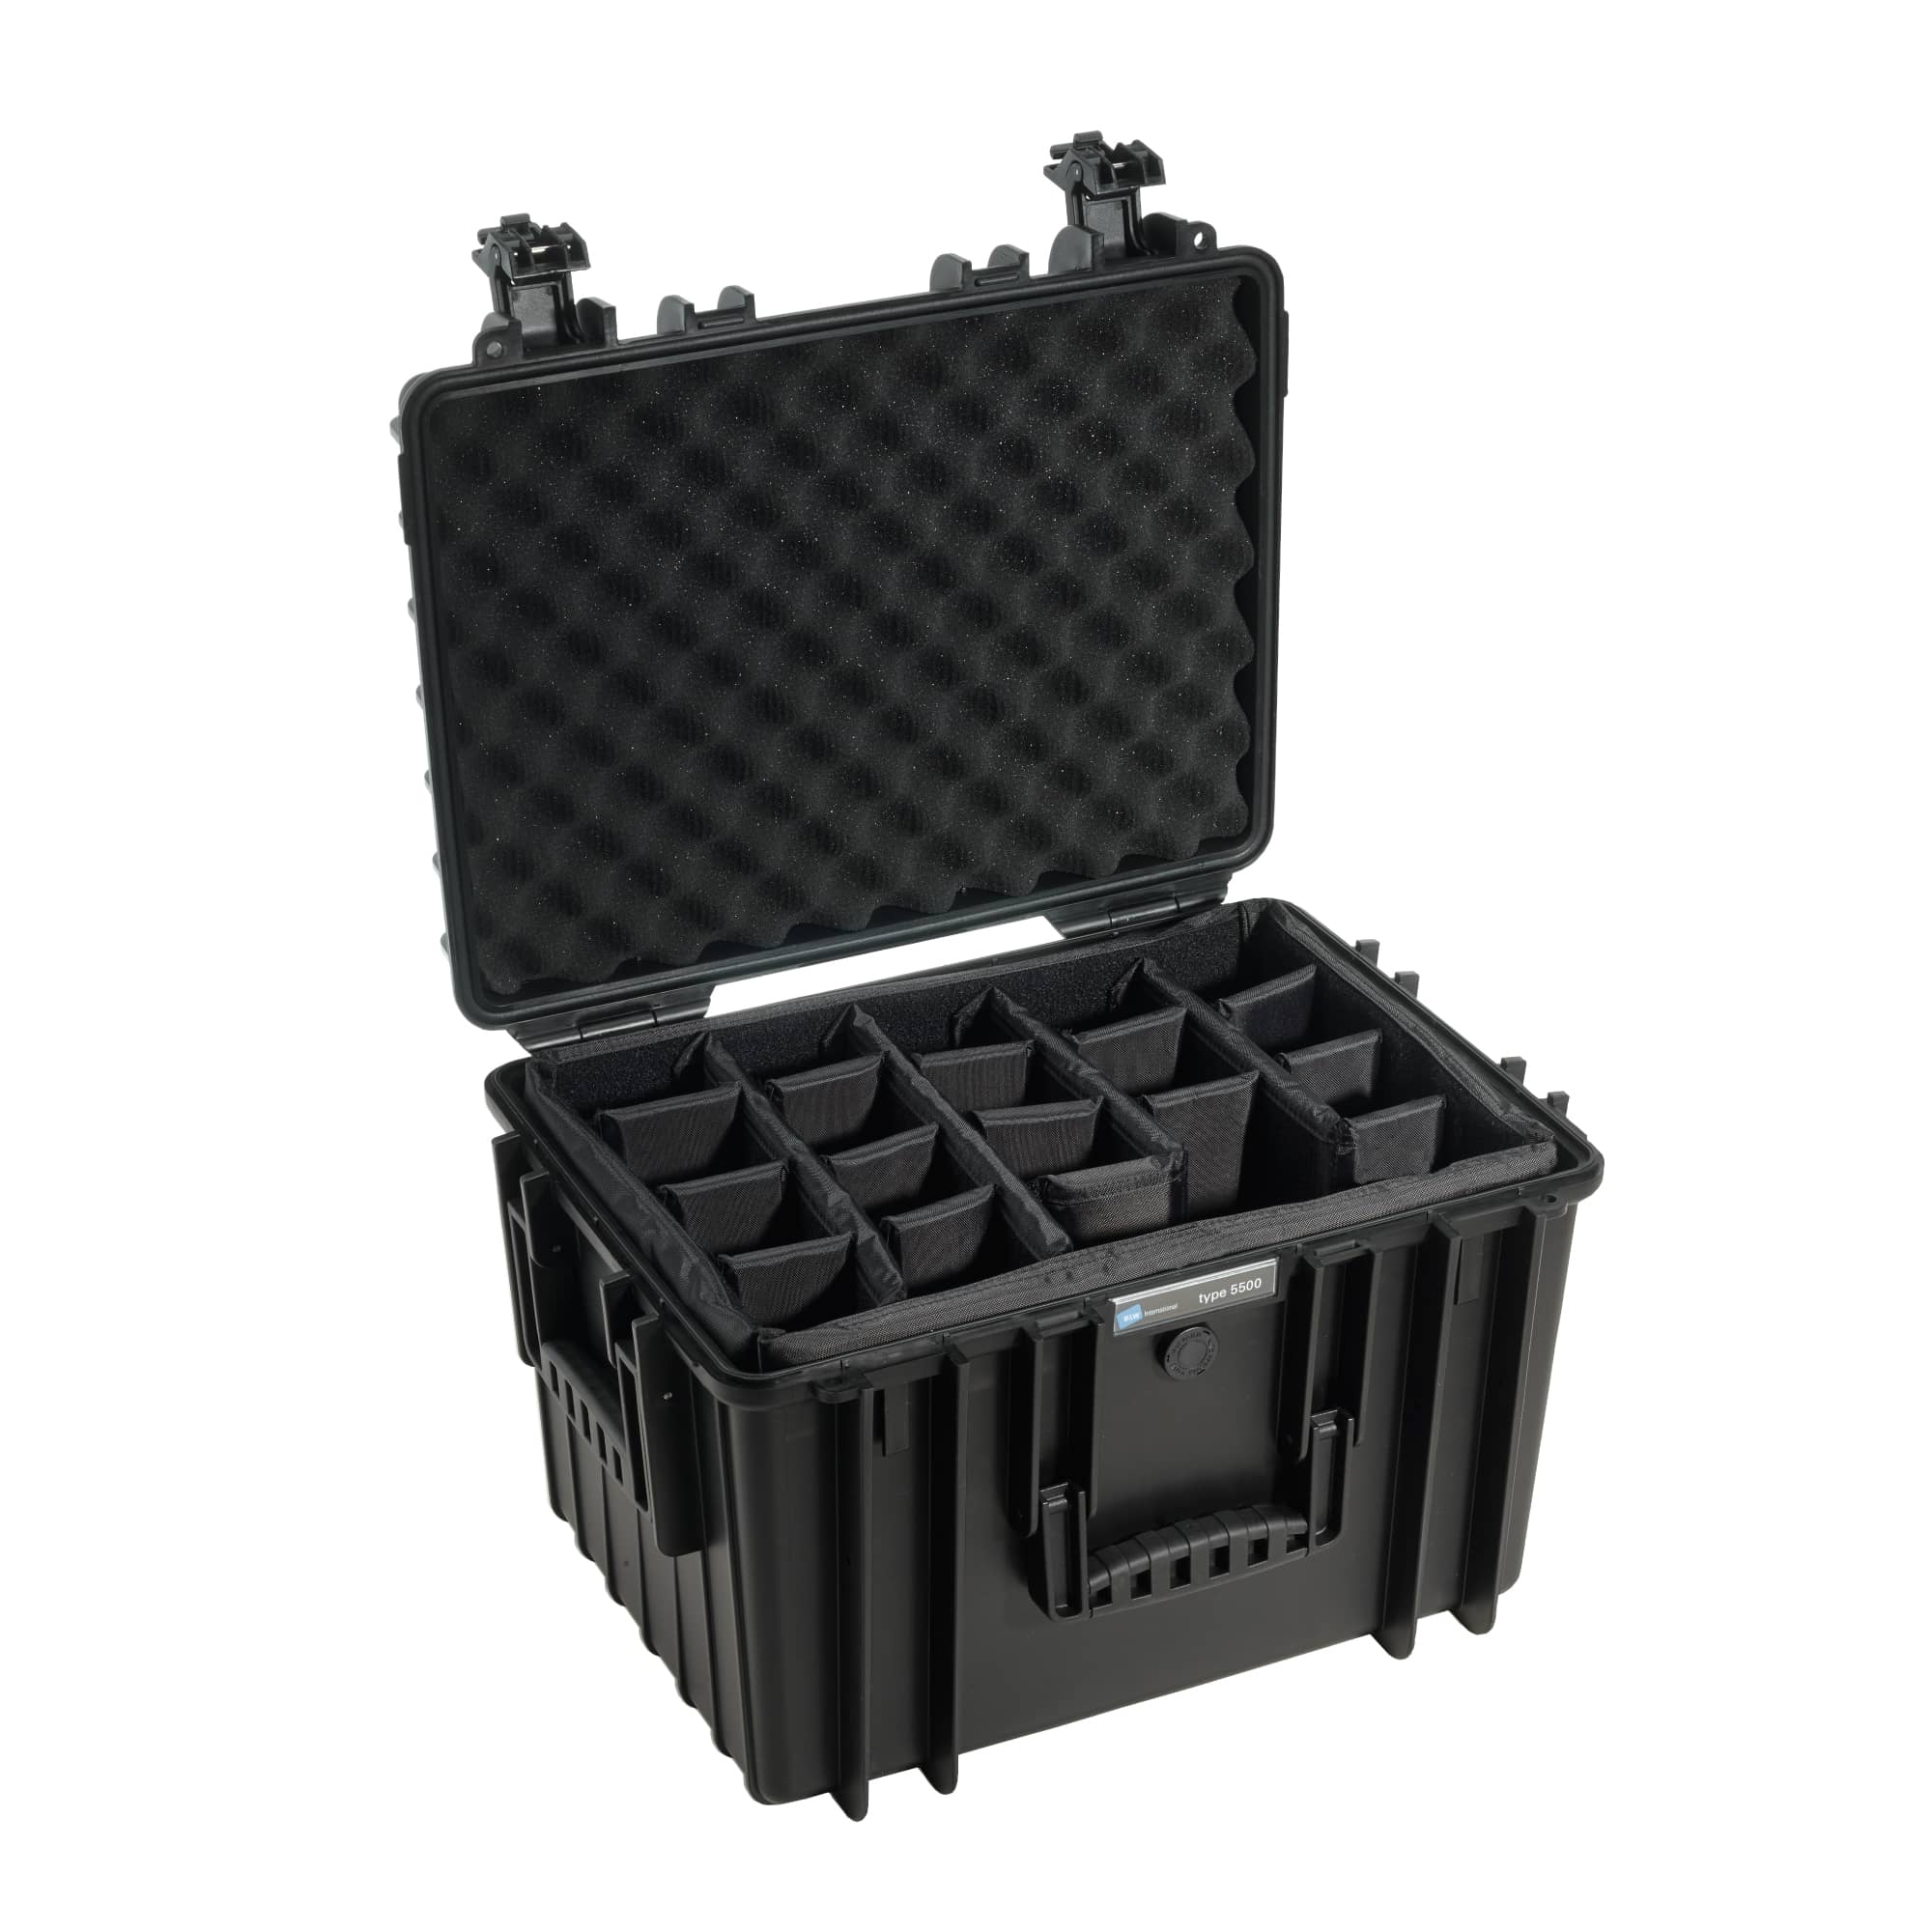 Outdoor Case Typ 5500 schwarz mit variabler Facheinteilung (RPD) Farbe: schwarz / Innenausstattung: Facheinteilung (RPD)